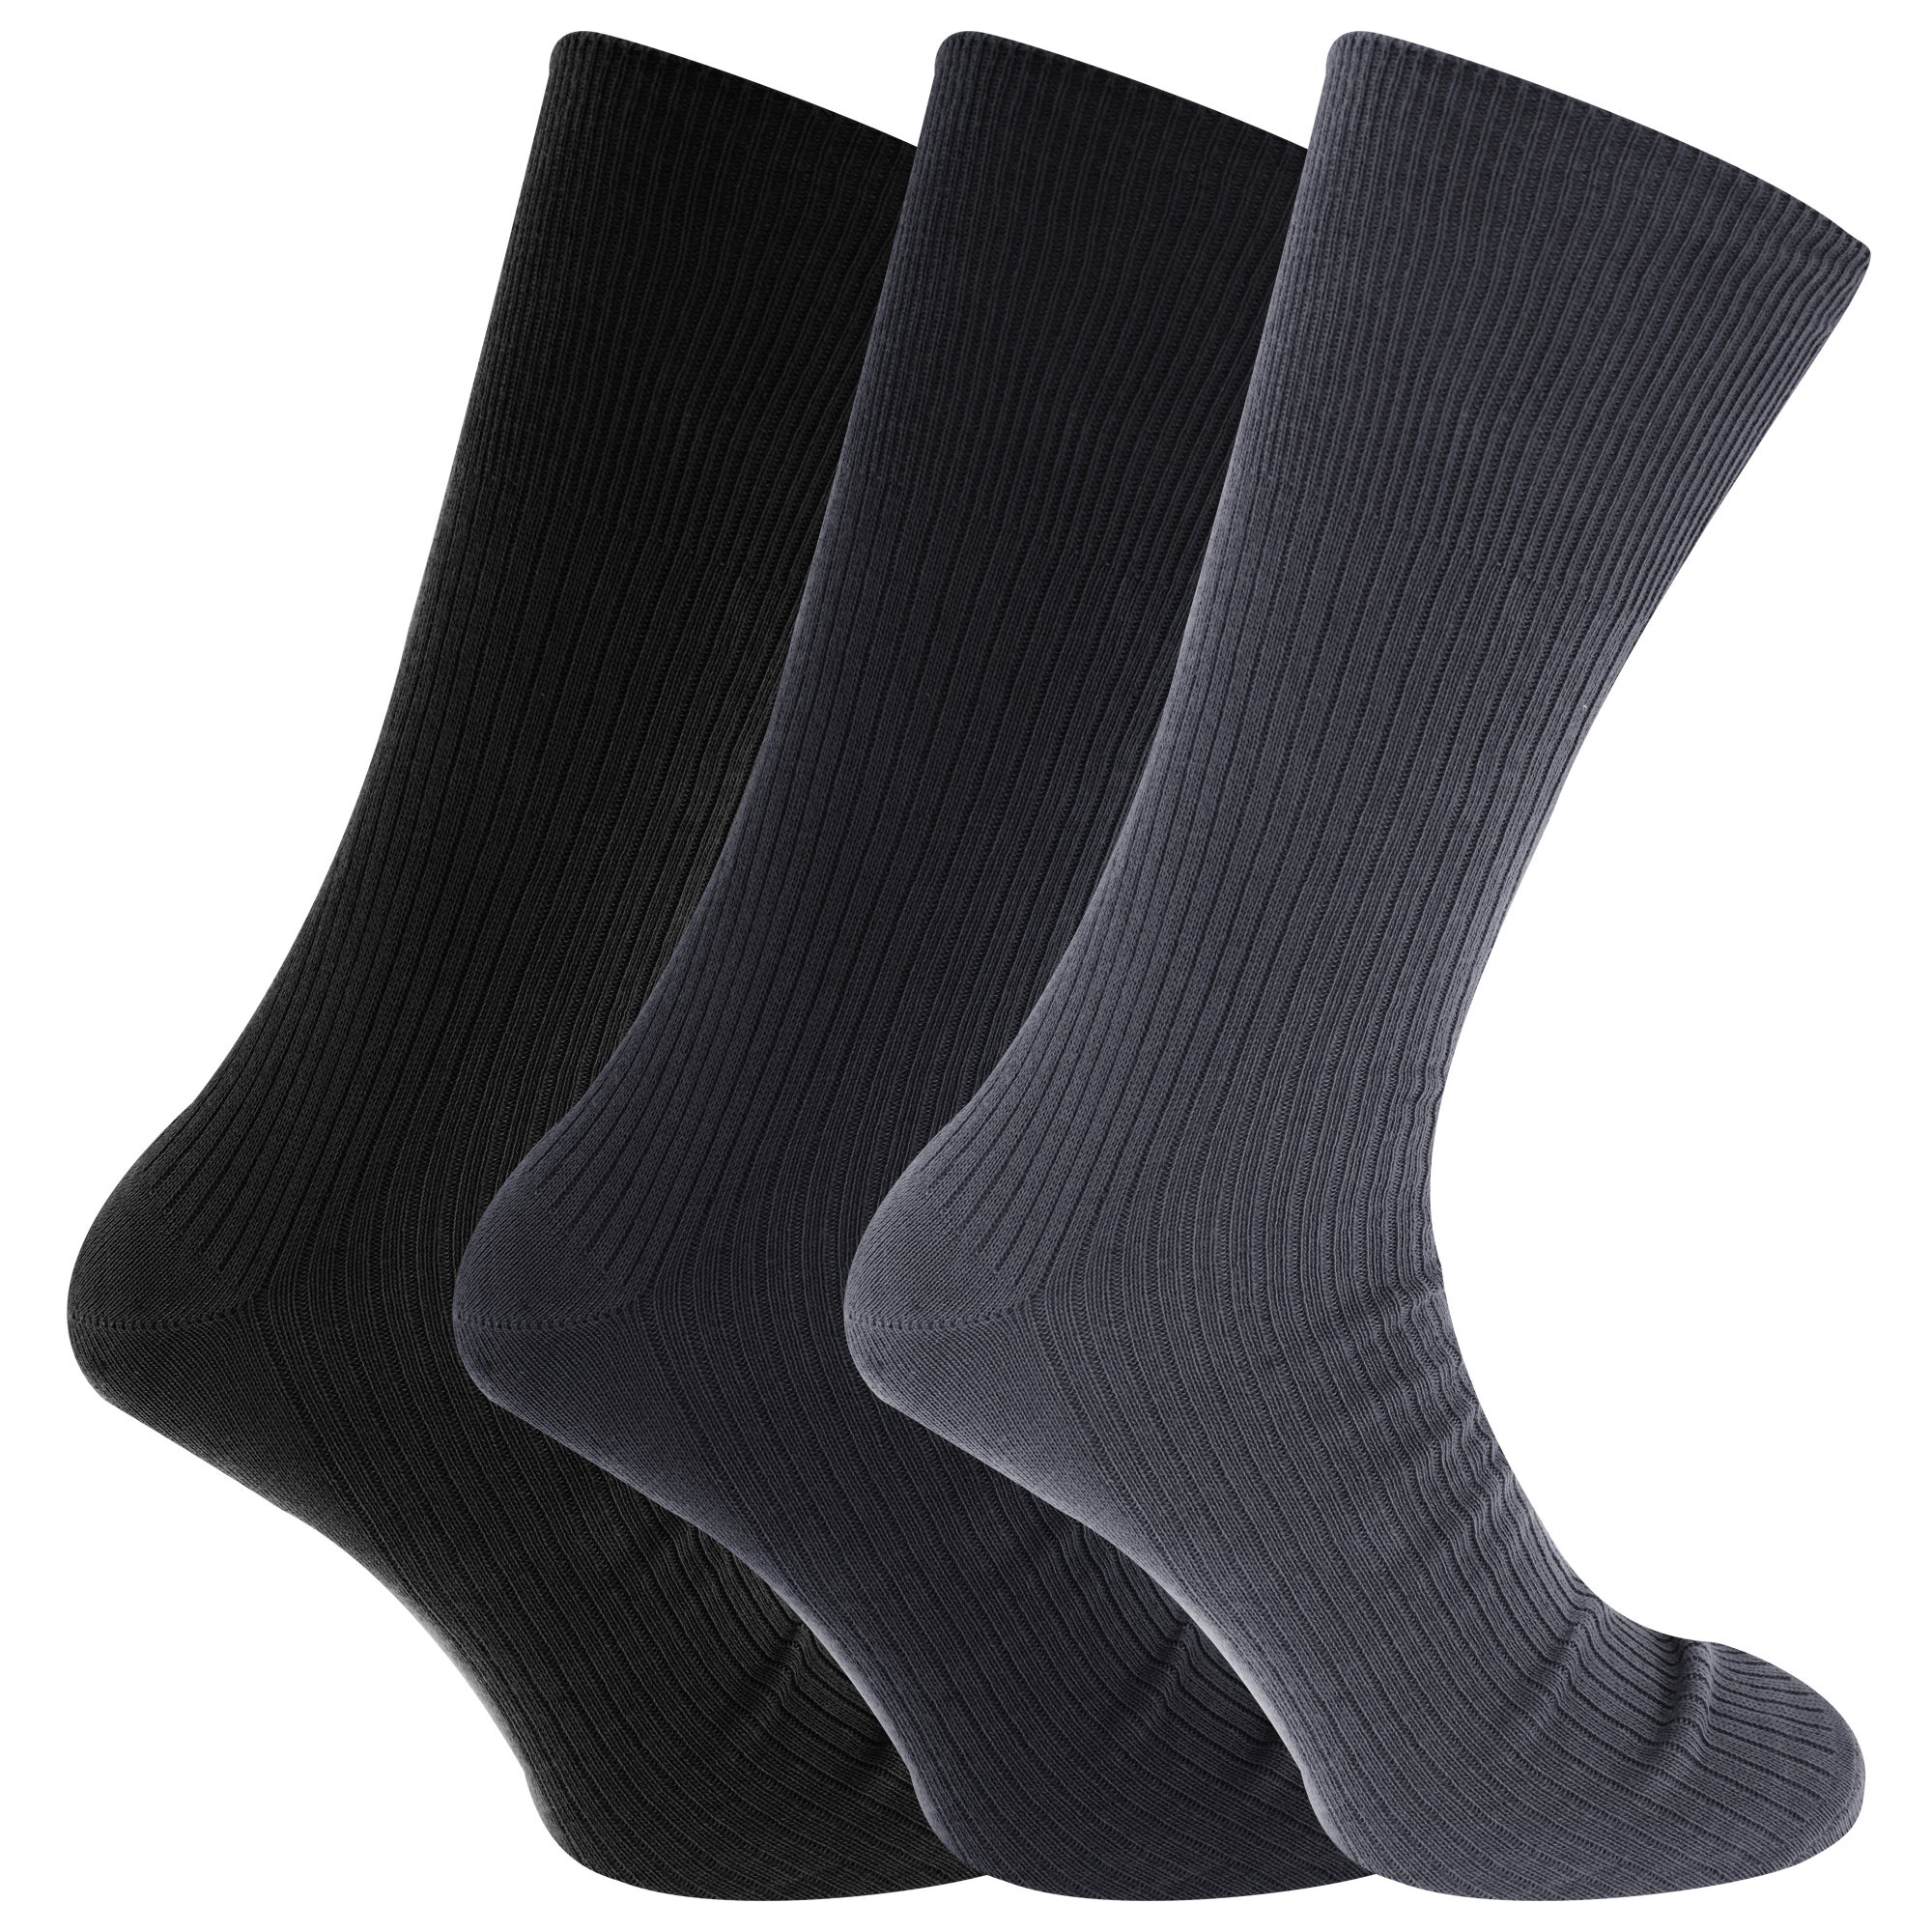 Mens Big Foot Non Elastic Diabetic Socks (3 Pairs)